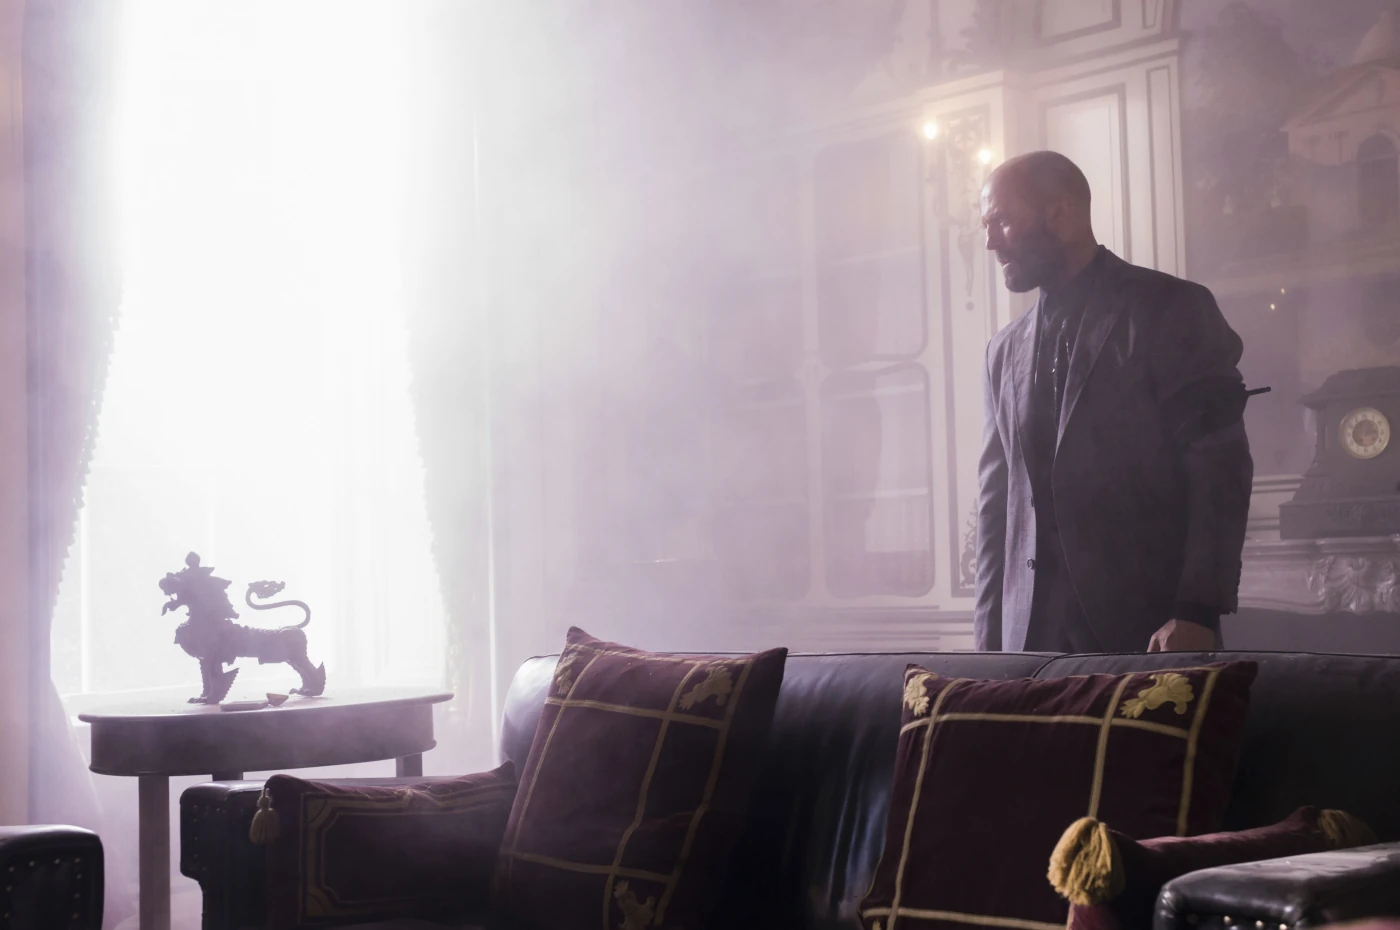 ein elegant ausgestattetes Zimmer, Licht aus einem großen Fenster blendet die Kamera, im rechten Teil des Bildes steht Jason Statham im Anzug hinter einem schwarzen Sofa